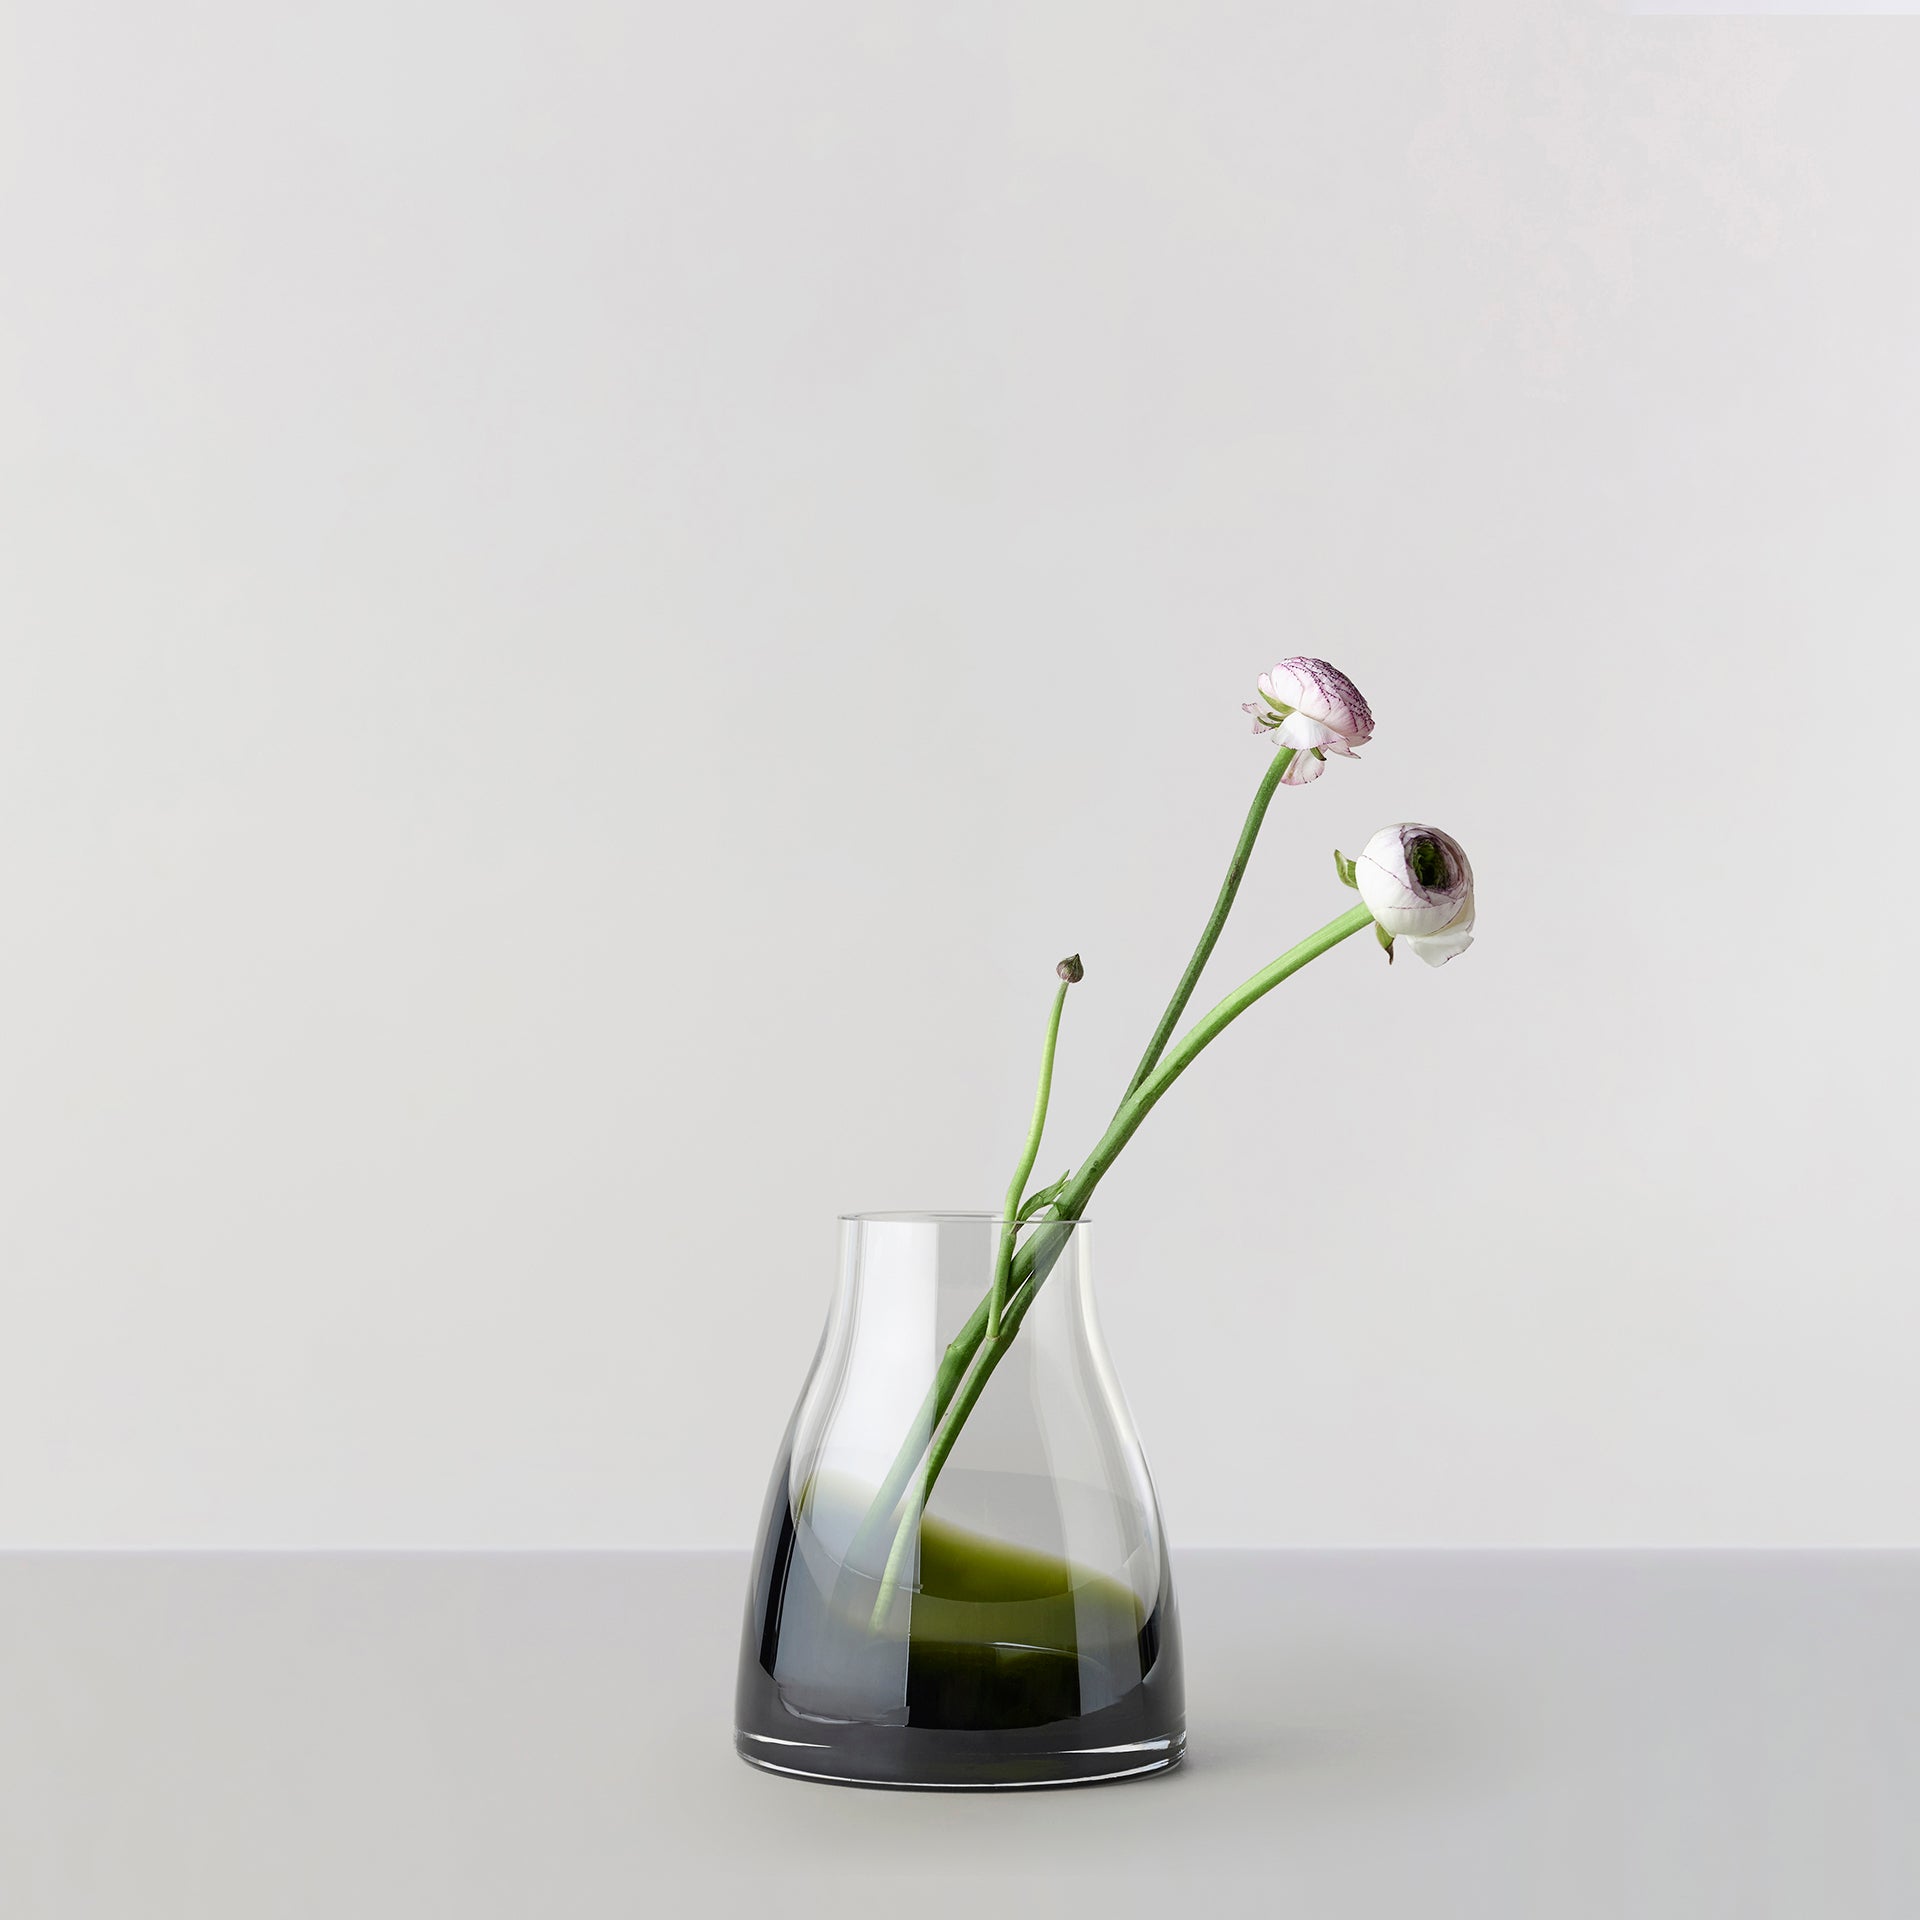 Billede af Flower Vase no. 2 - Moss green